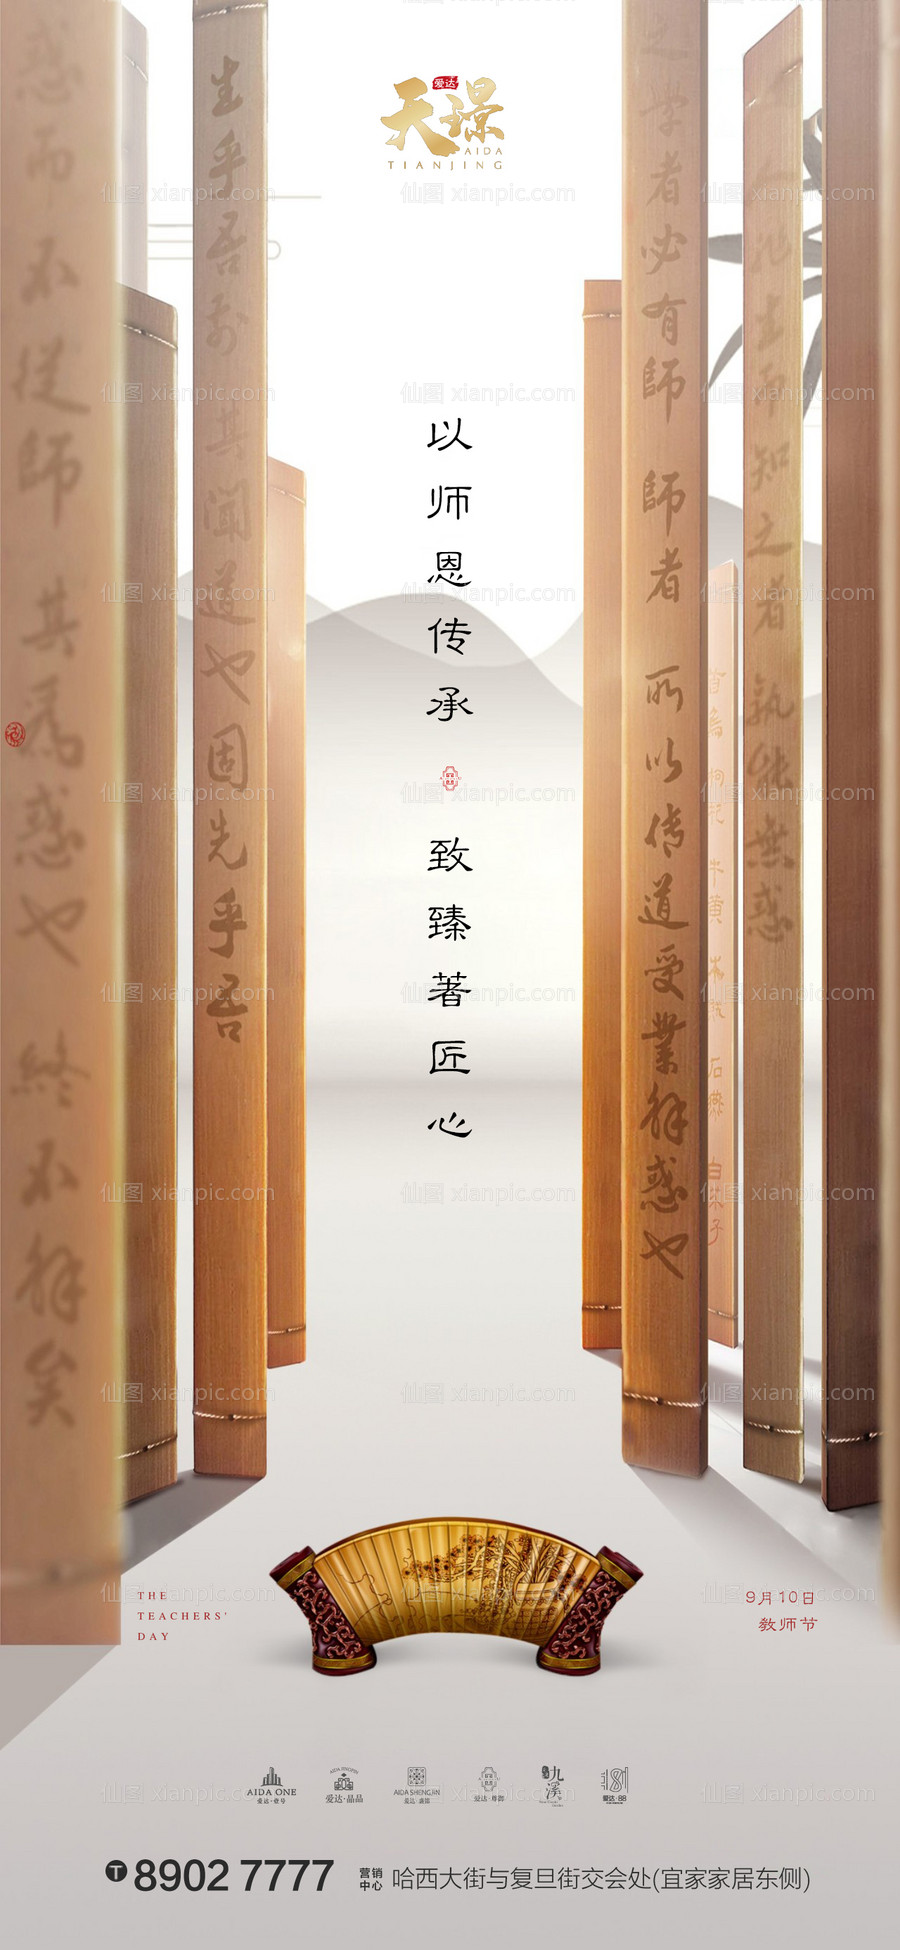 素材乐-教师节中国风竹简地产海报